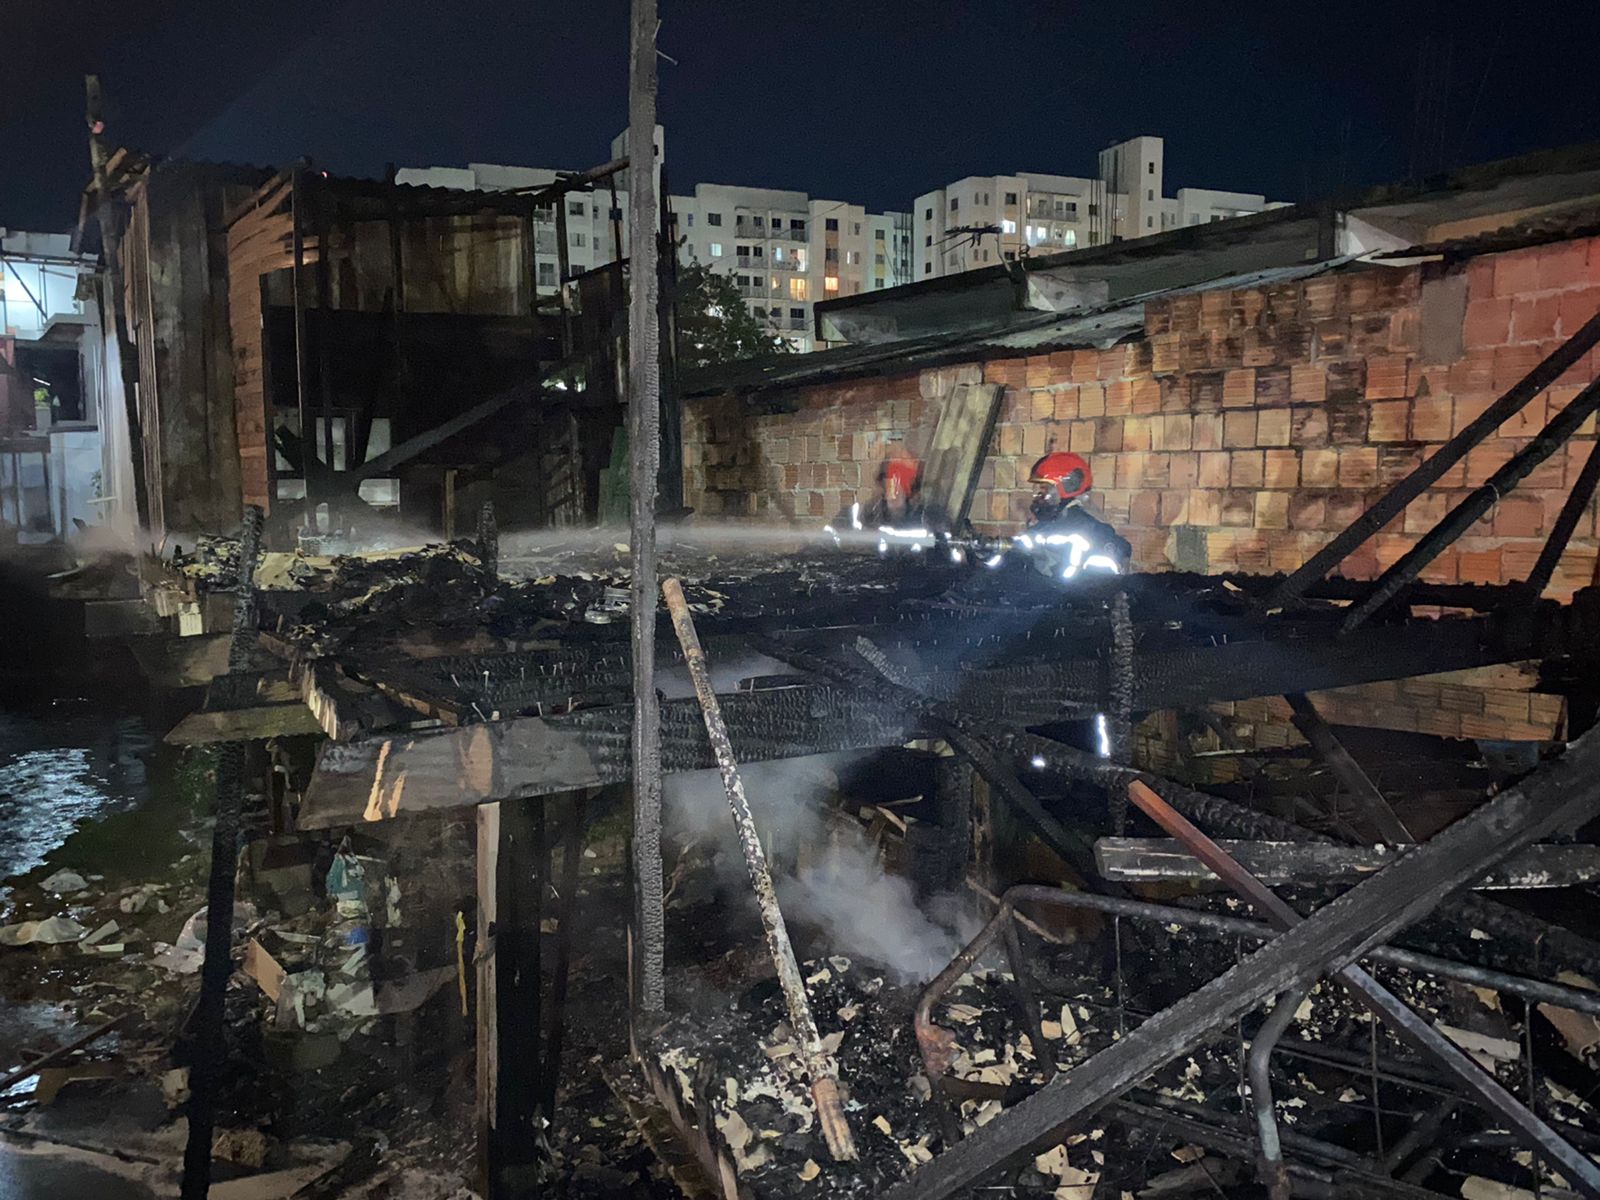 Residências são destruídas em incêndio no bairro da Paz